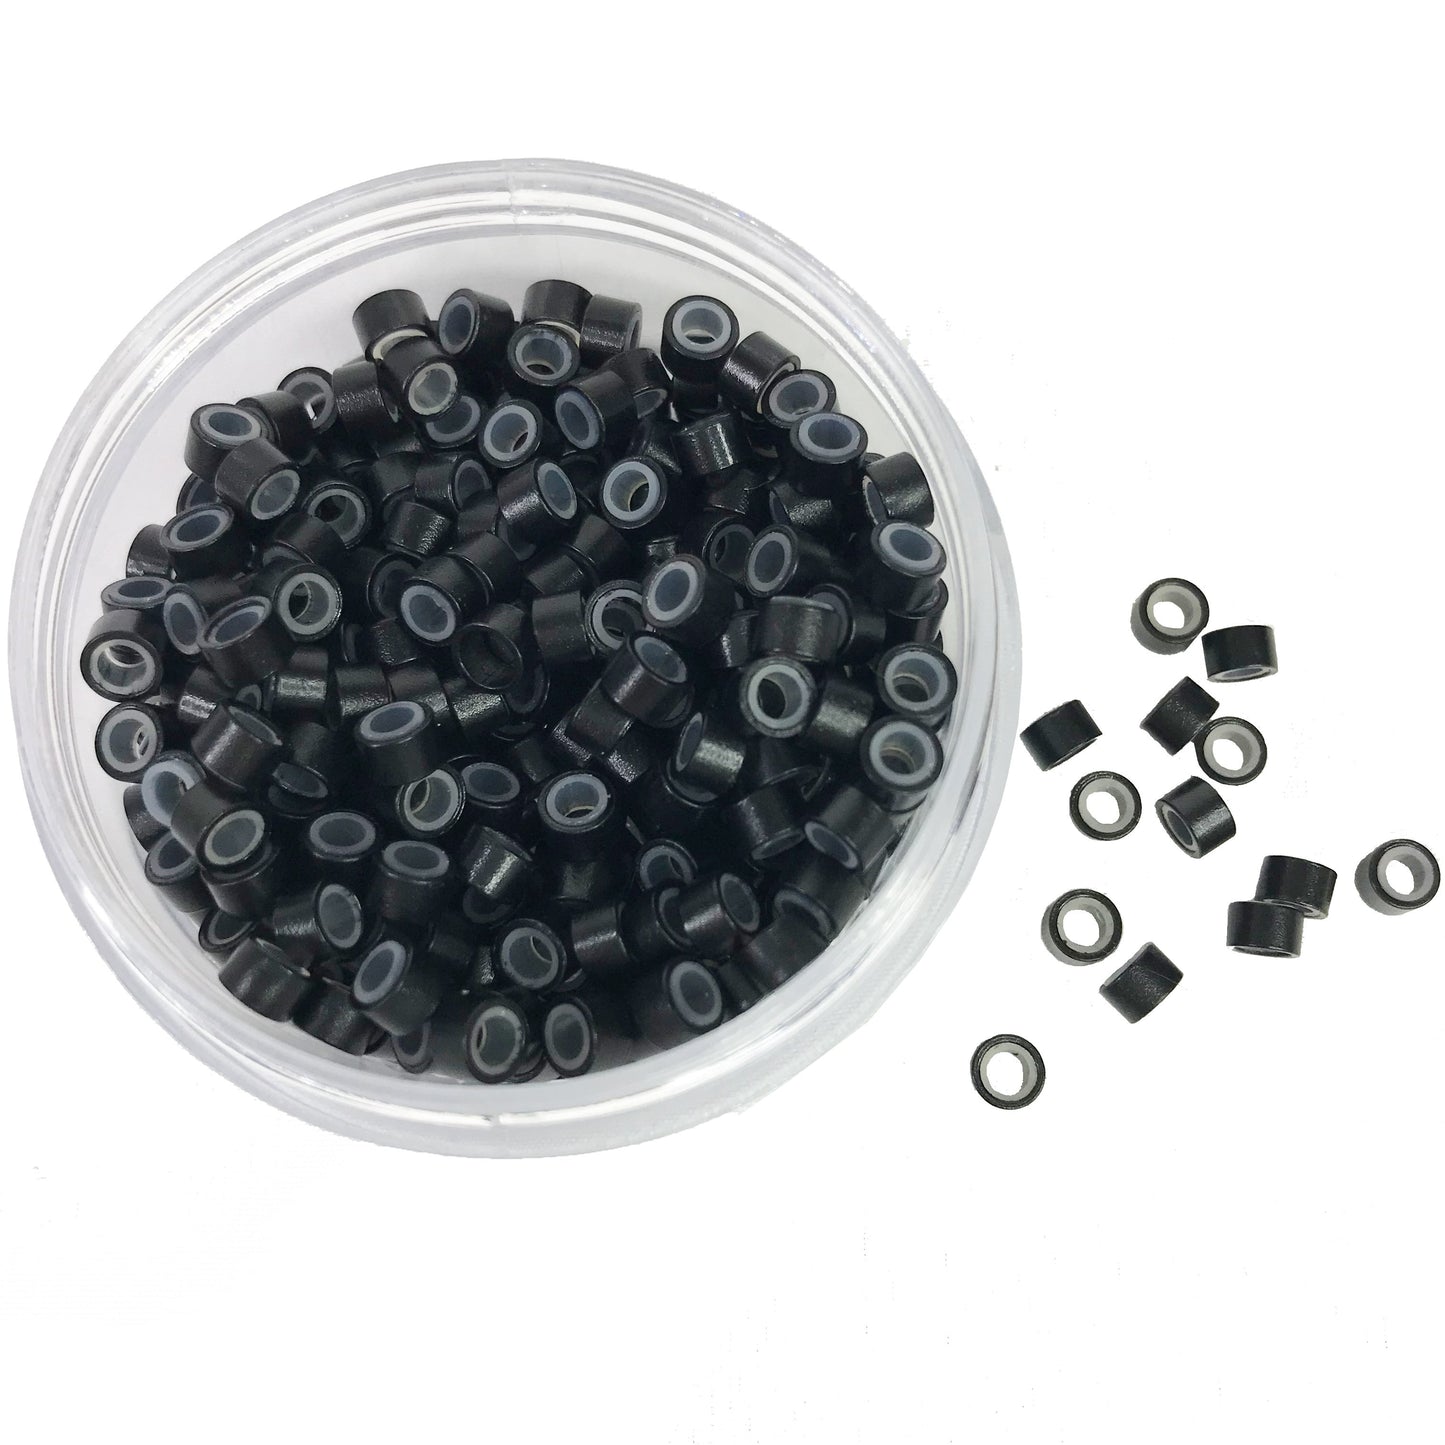 Anillos de microenlace de silicona Cuentas forradas de 5 mm para herramienta de extensiones de cabello Negro